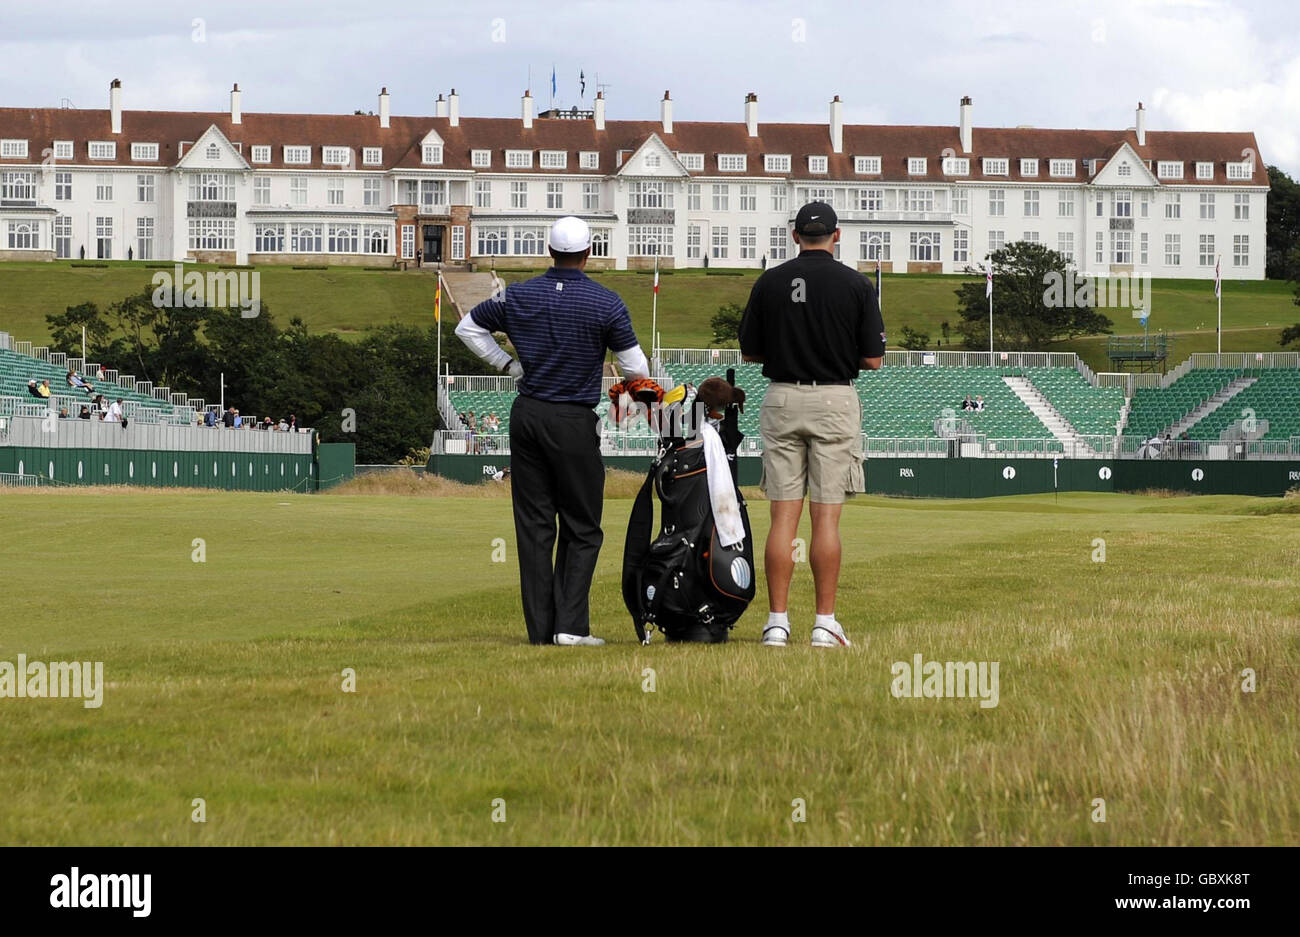 Le Tiger Woods des États-Unis attend de jouer son deuxième tir au 18e vert pendant le cycle d'entraînement au Turnberry Golf Club, Ayrshire. Banque D'Images